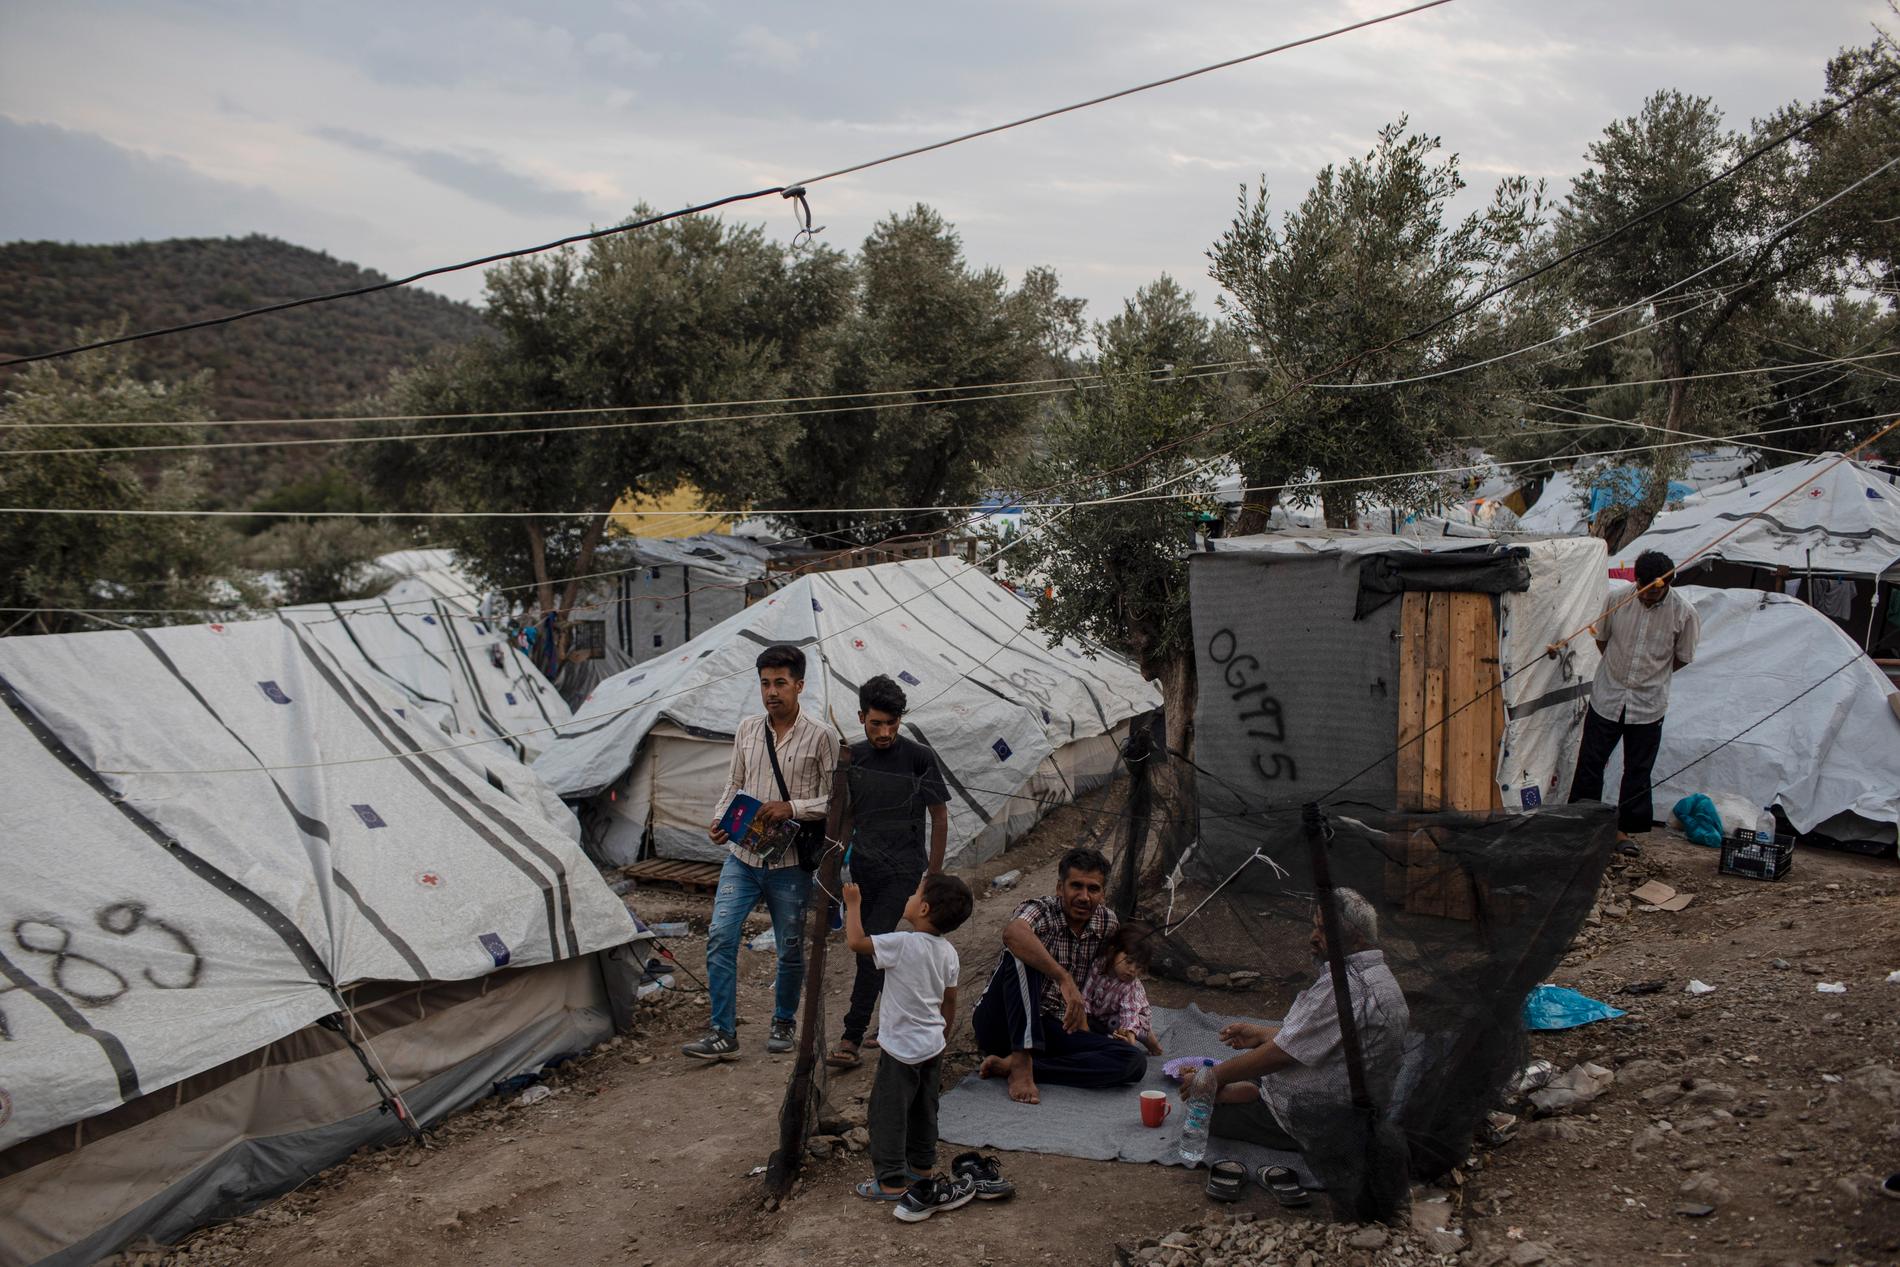 Spontana tältbyar växer fram på grekiska öar, utanför de överfyllda uppsamlingslägren för flyktingar och migranter. Arkivbild från oktober.